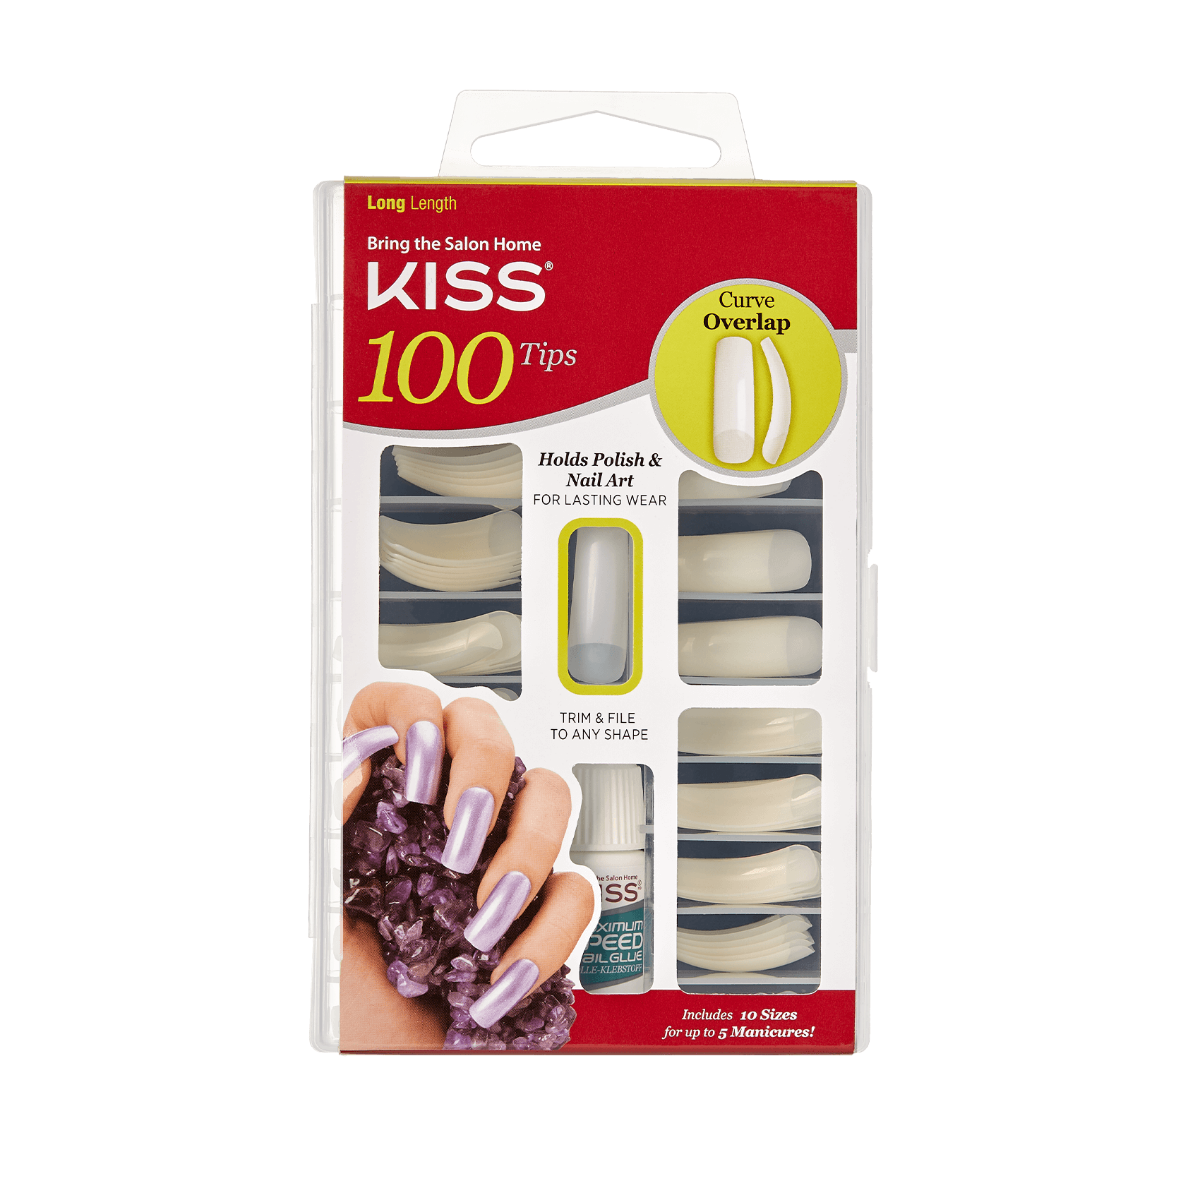 KISS 100 Tips Nails